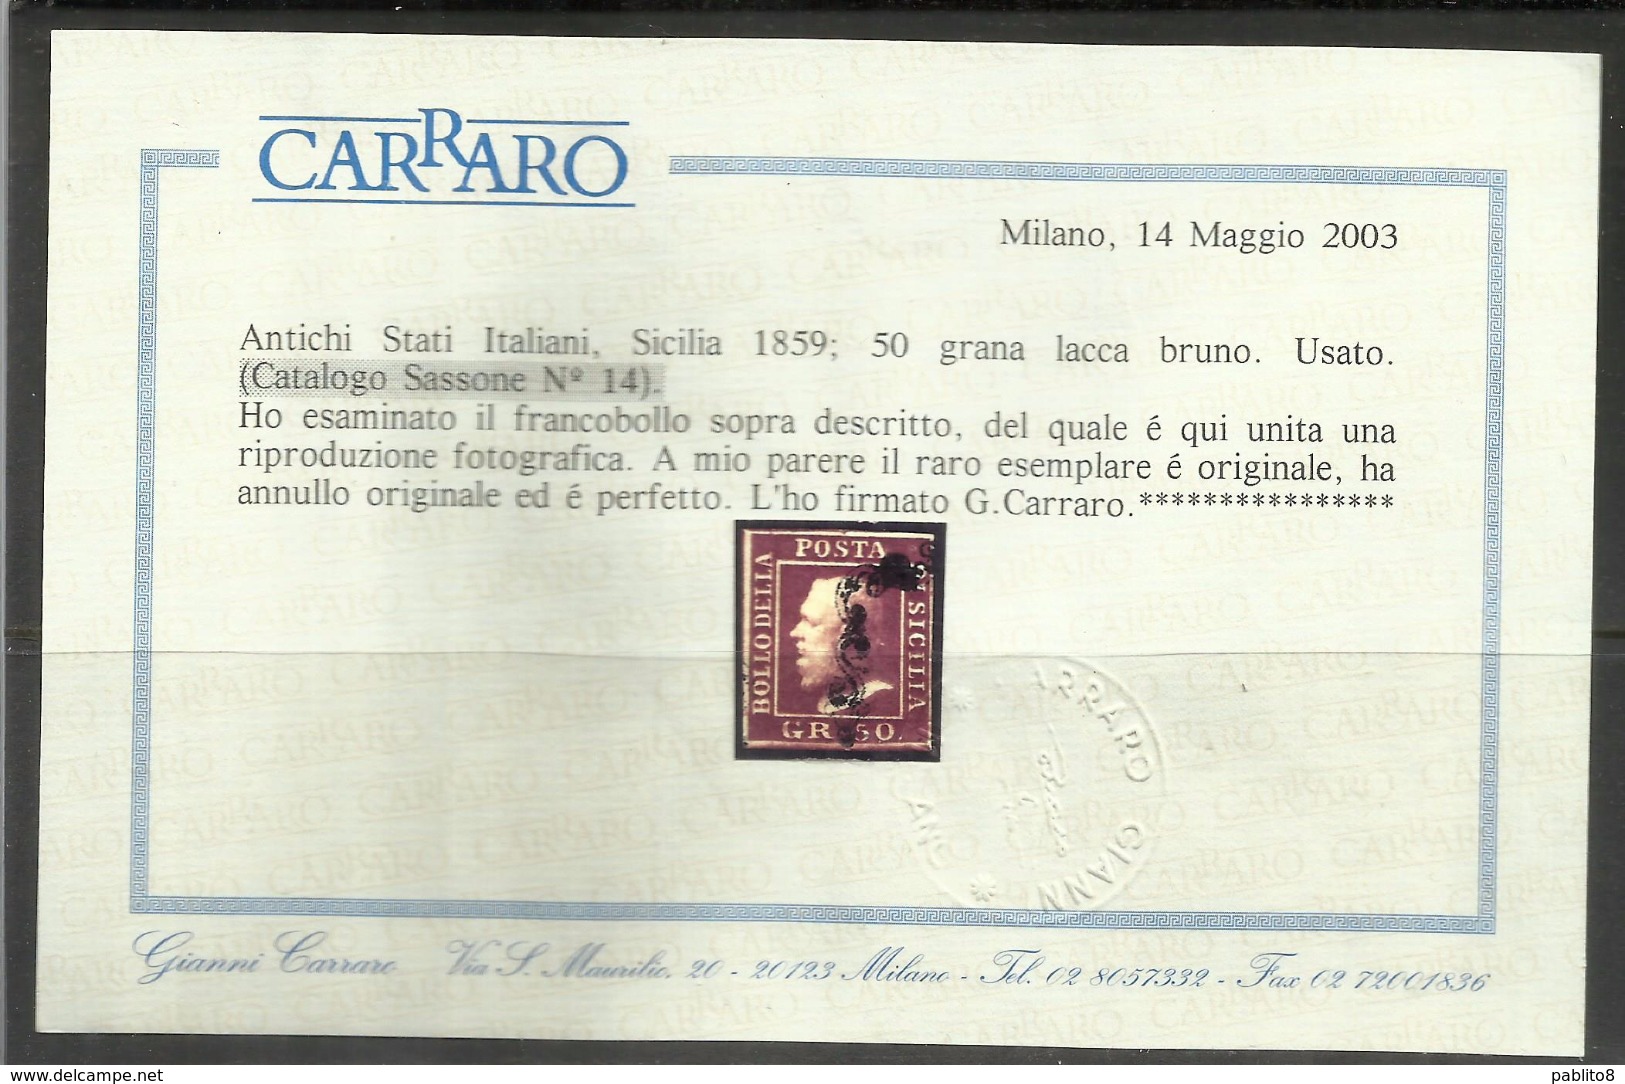 ANTICHI STATI SICILIA 1859 GRANA 50 50gr LACCA BRUNO USATO USED OBLITERE' - Sicile